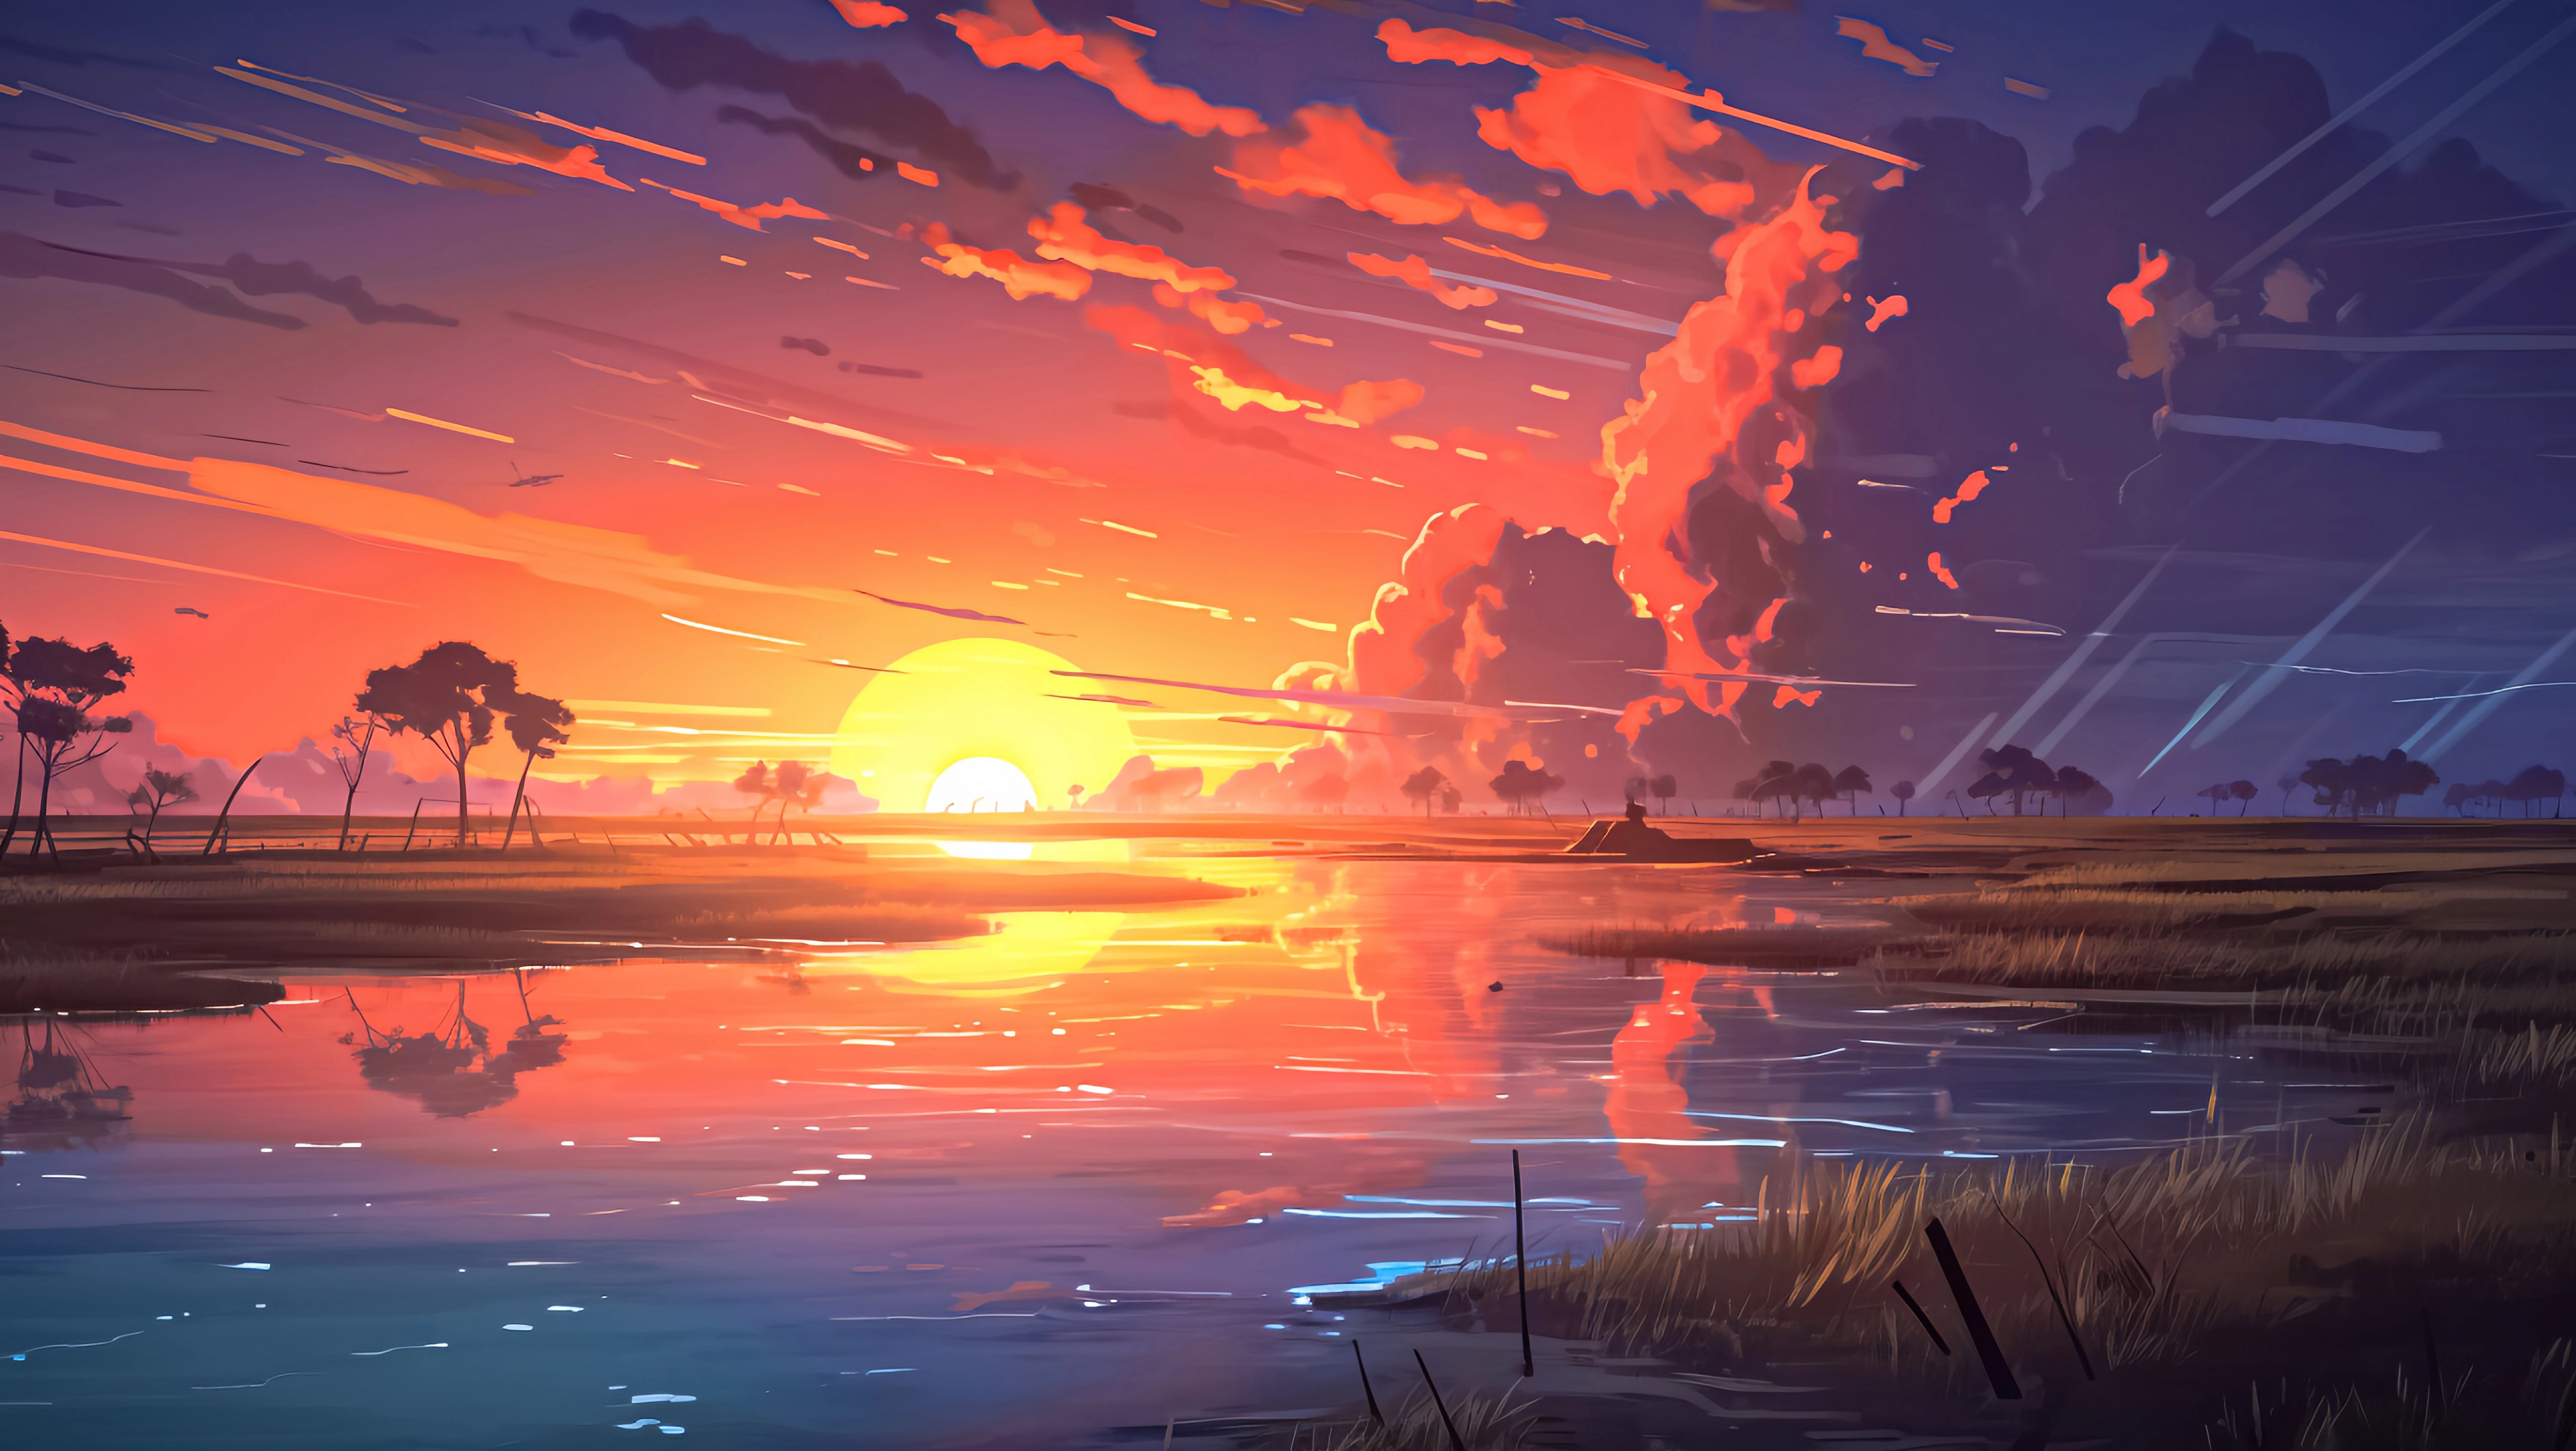 sunset lake 5k rw.jpg